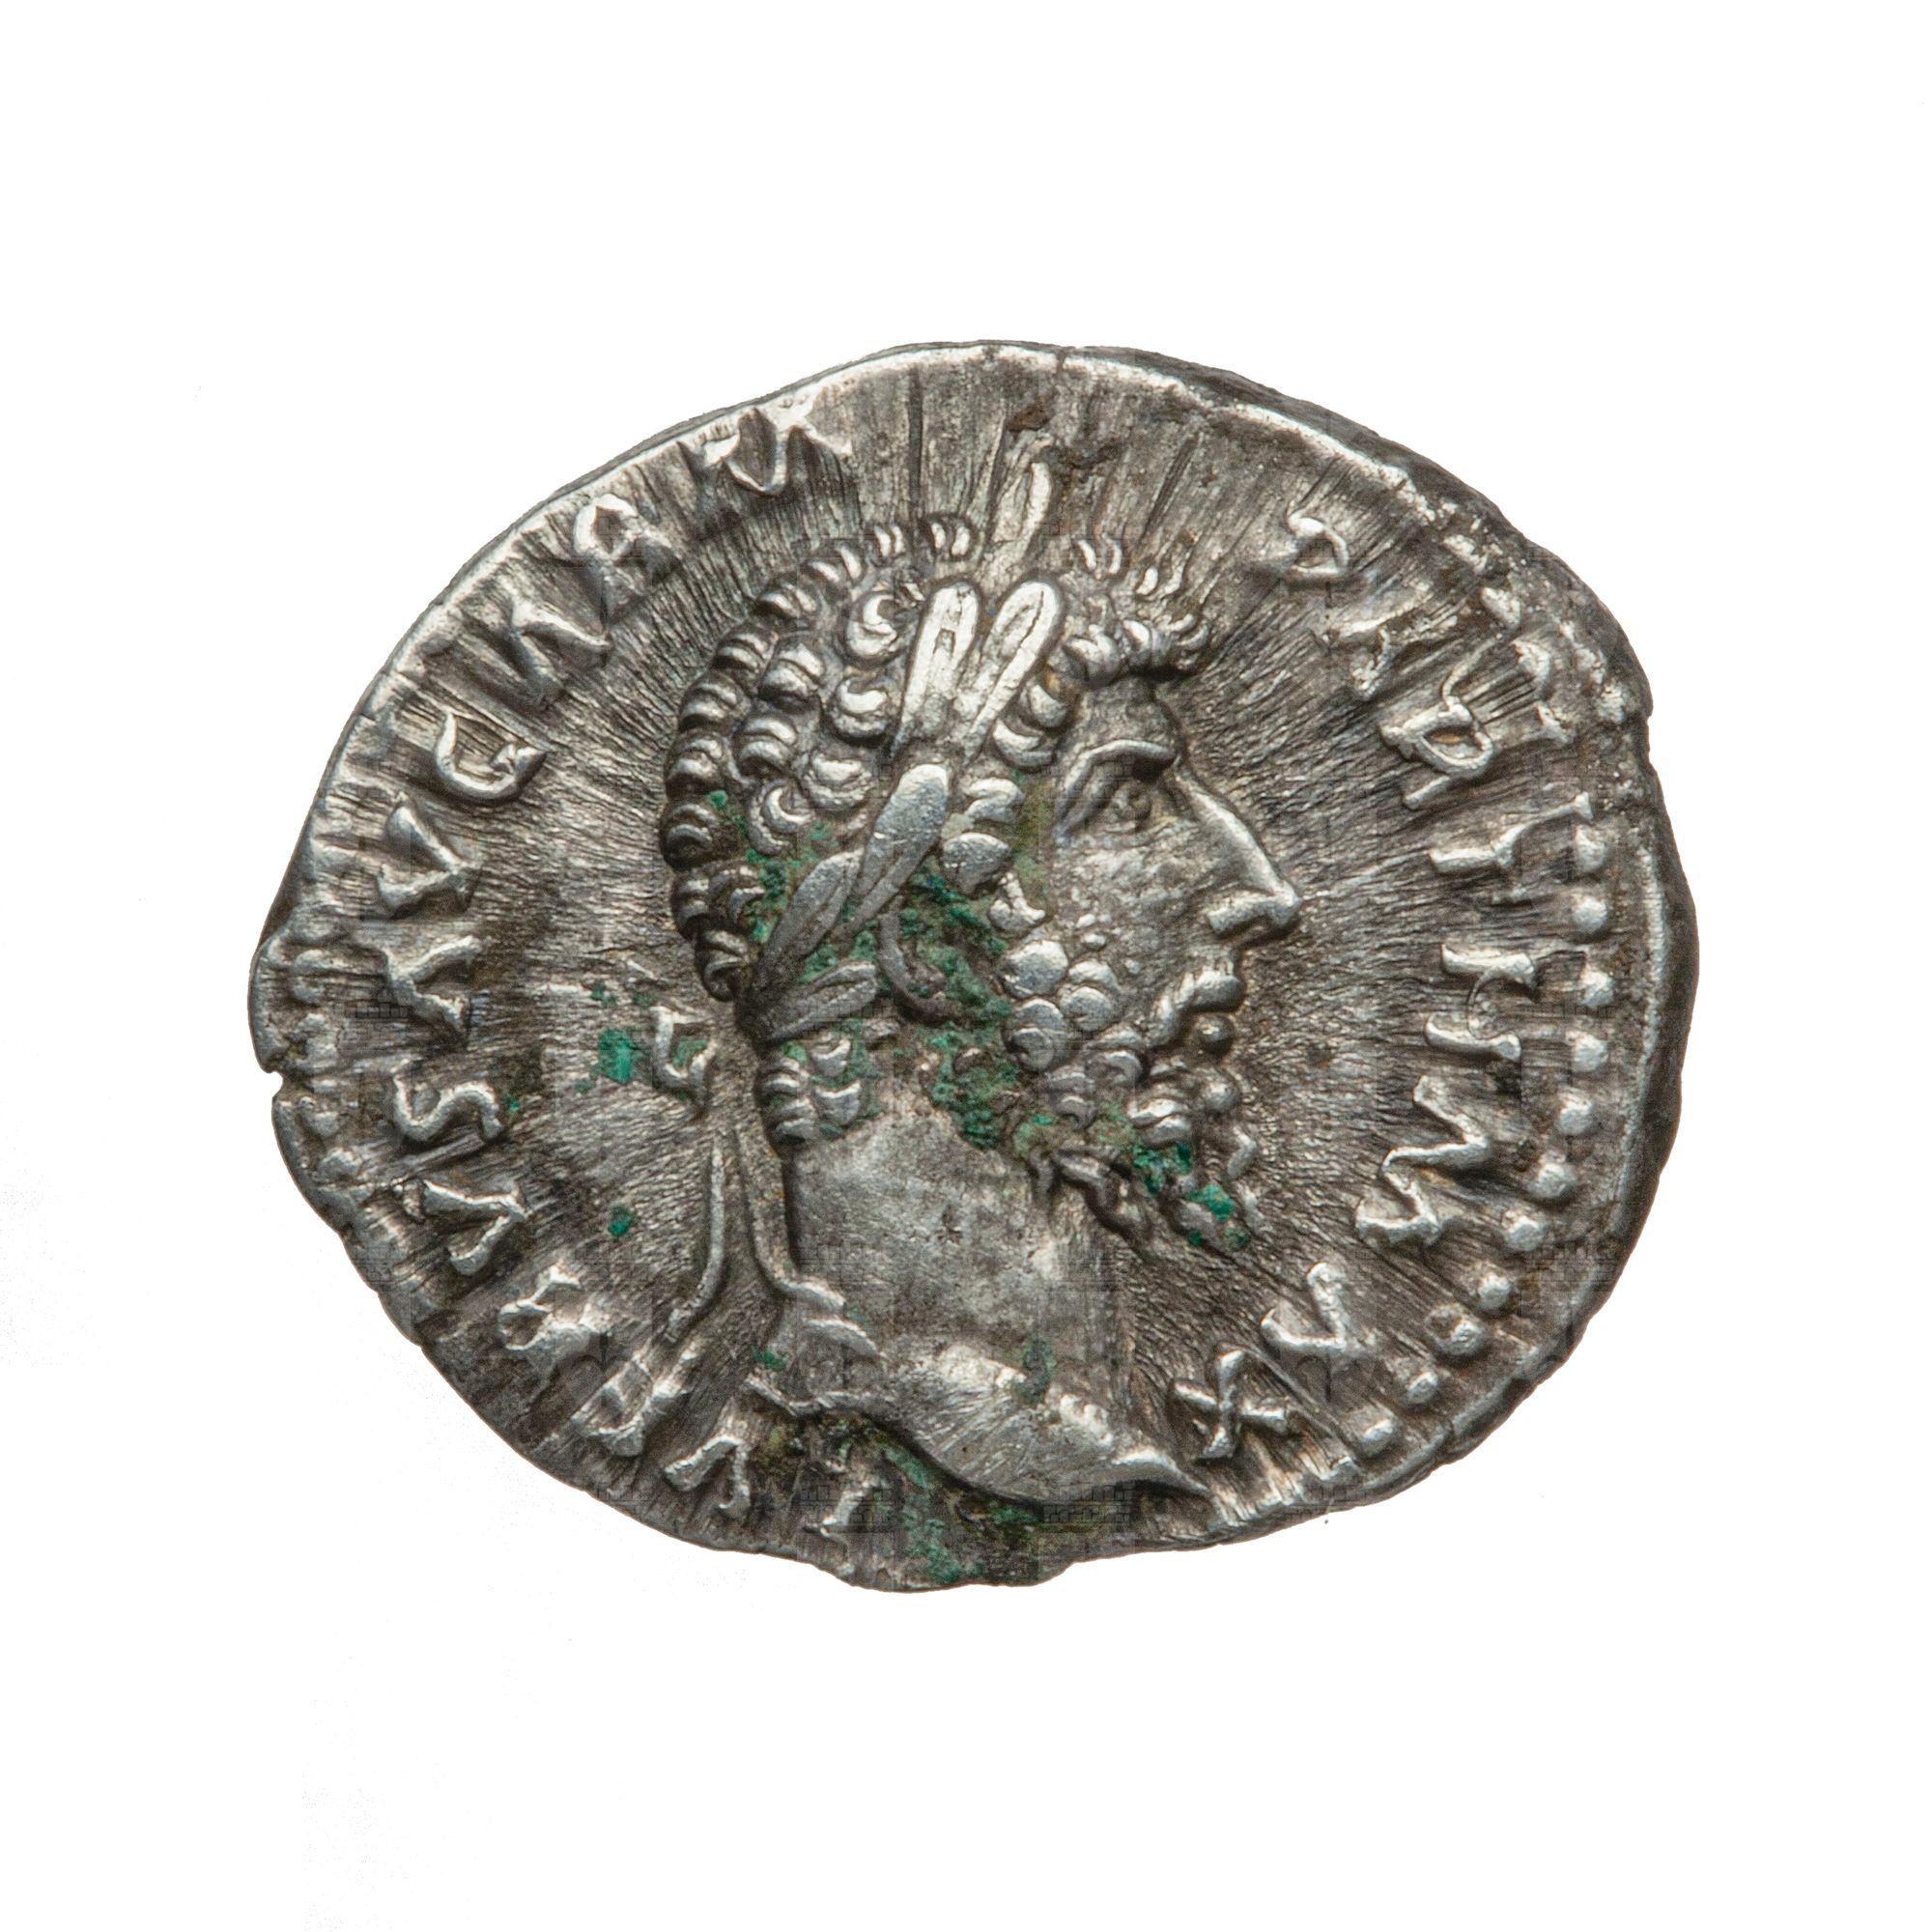 https://catalogomusei.comune.trieste.it/samira/resource/image/reperti-archeologici/Roma 1043 D Lucio Vero.jpg?token=65e6bf47d056e